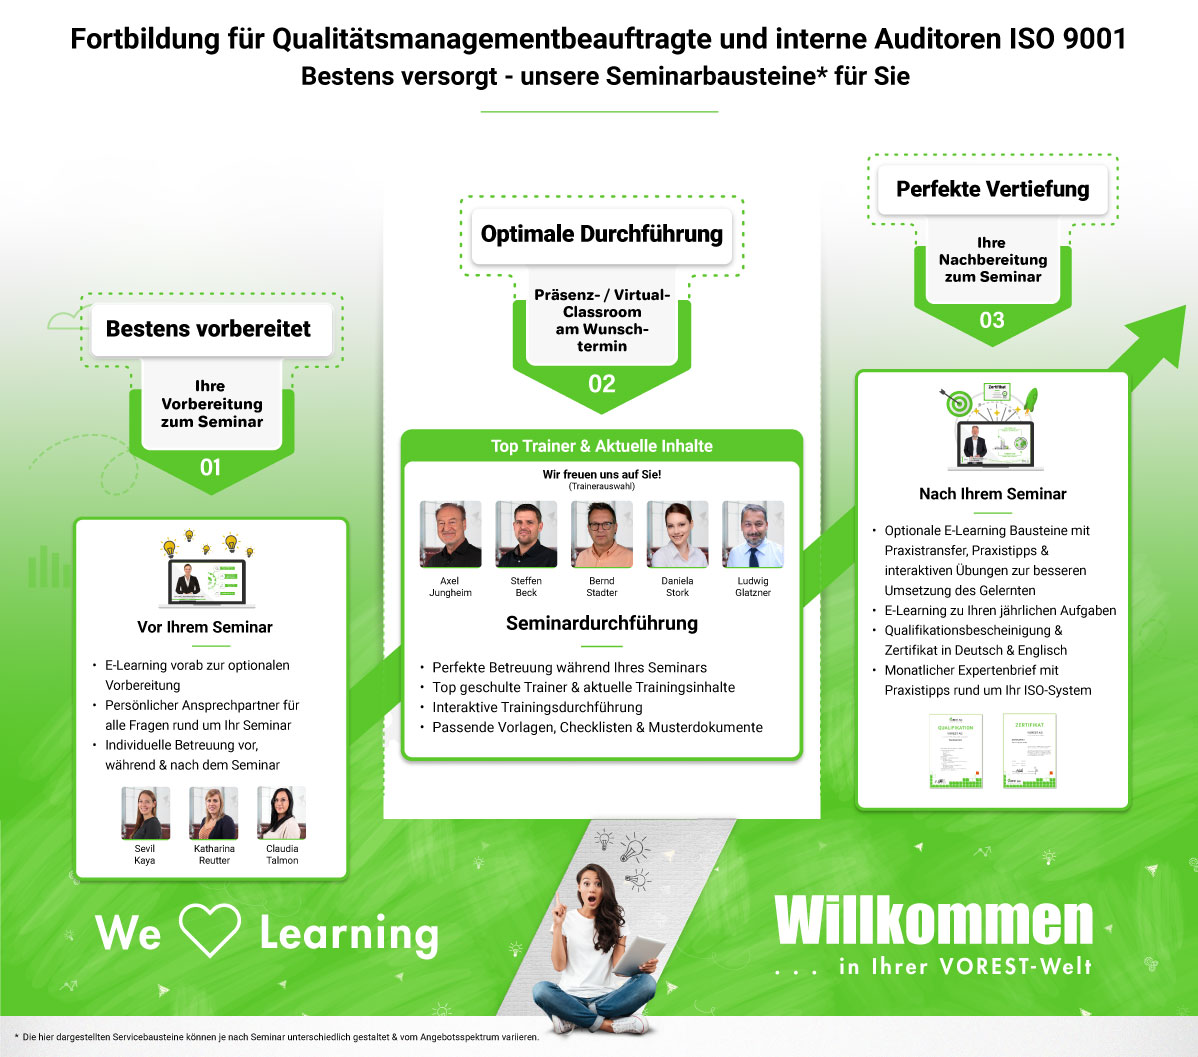 Fortbildung für Qualitätsmanagementbeauftragte und interne Auditoren ISO 9001